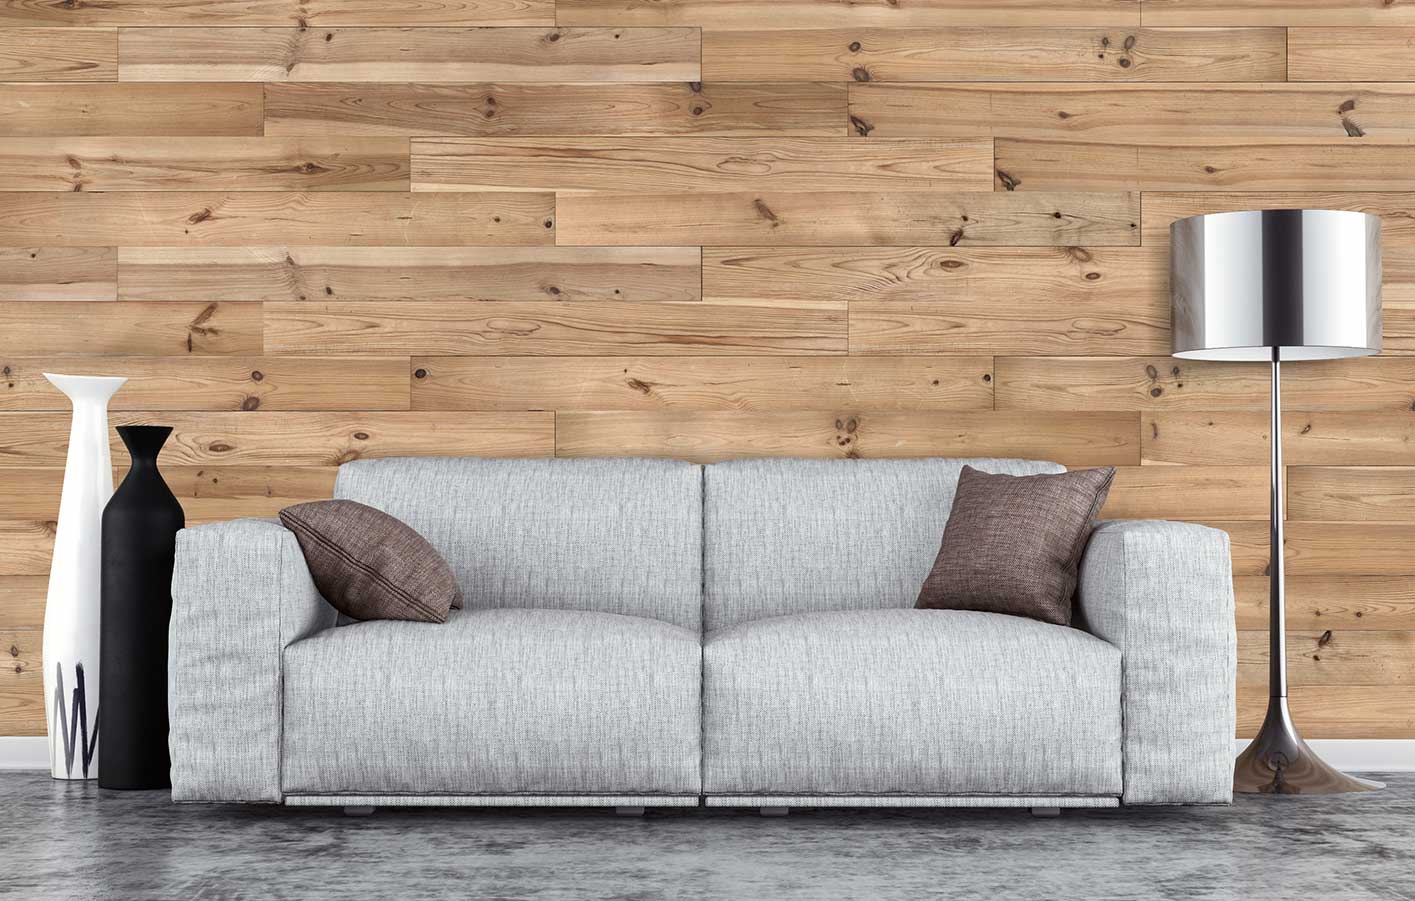 Holz und Paneele für Wand & Decke